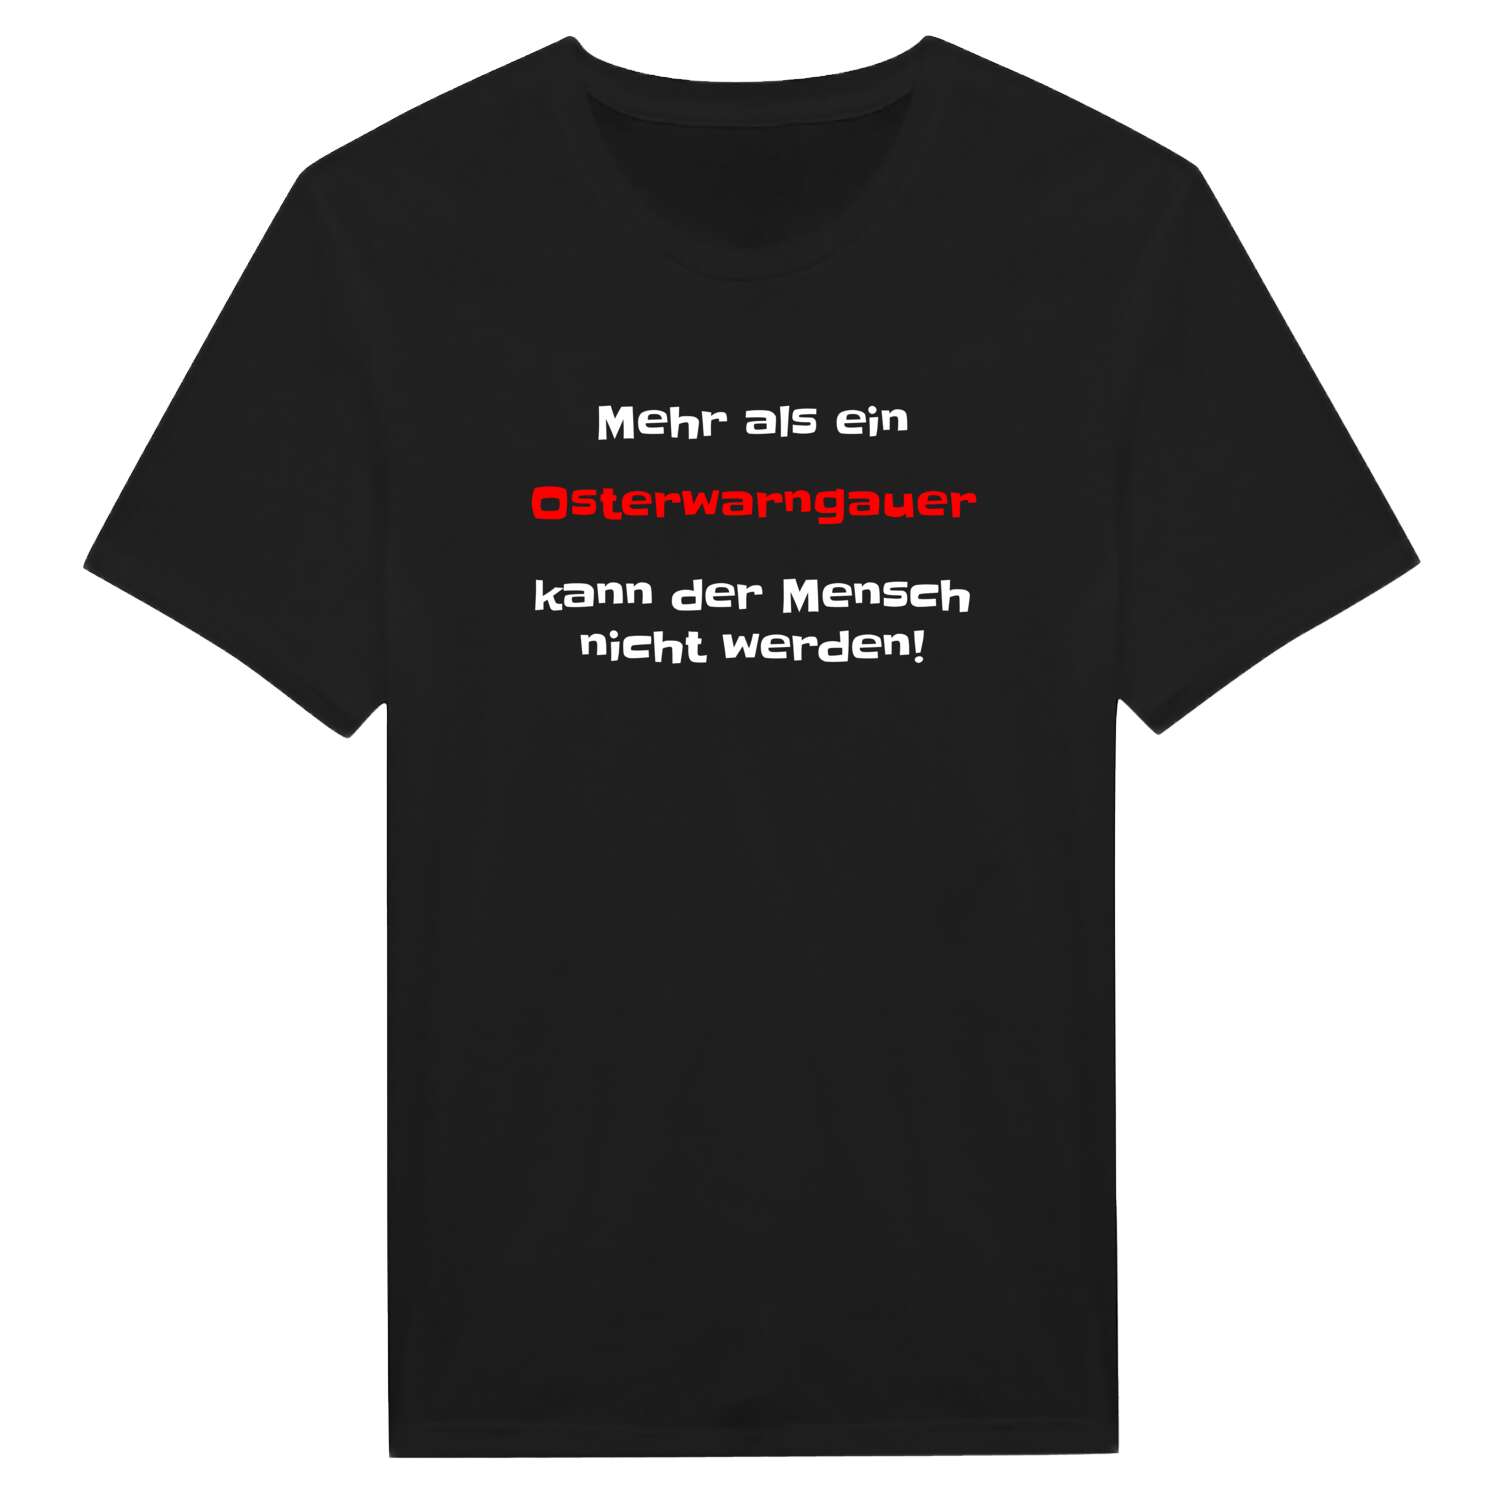 Osterwarngau T-Shirt »Mehr als ein«